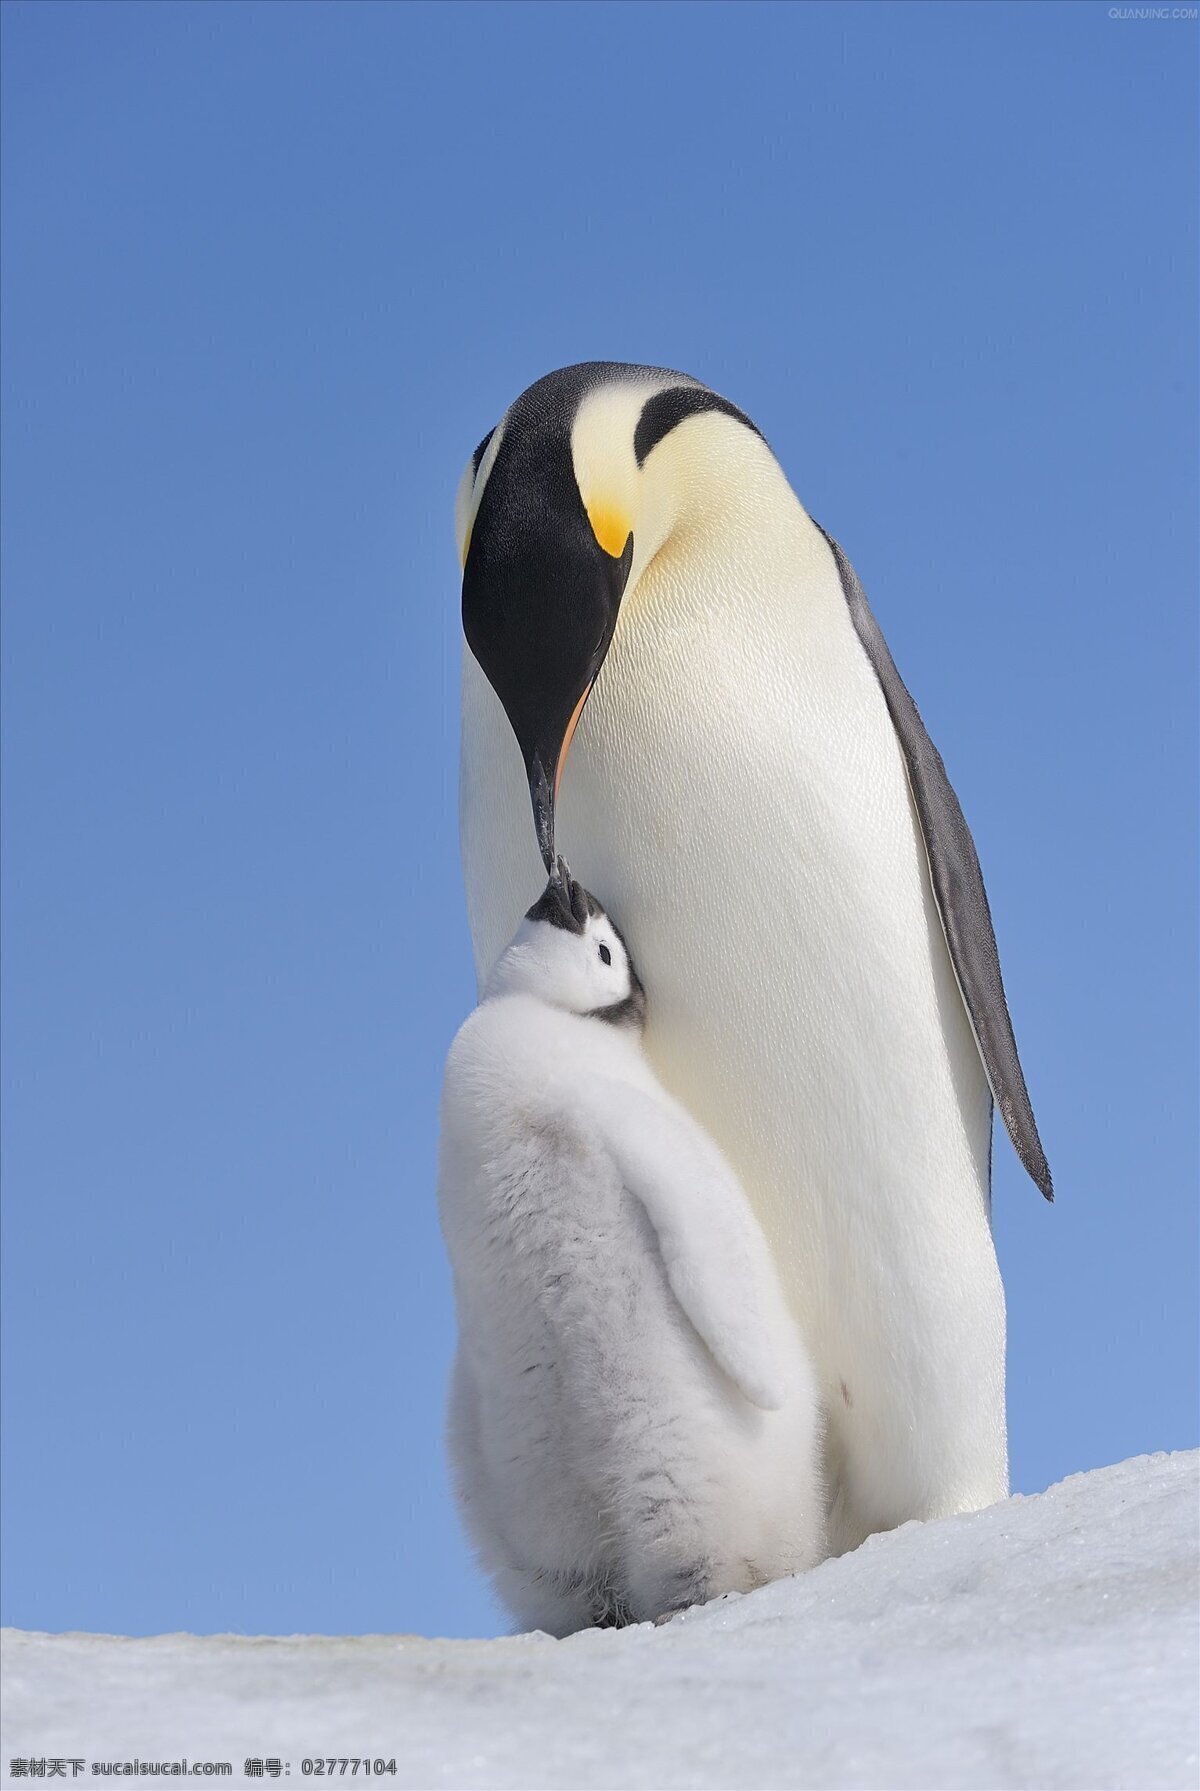 帝企鹅 企鹅 快乐 大脚 南极 冰川 亲子 哺育 动物 野生动物 生物世界